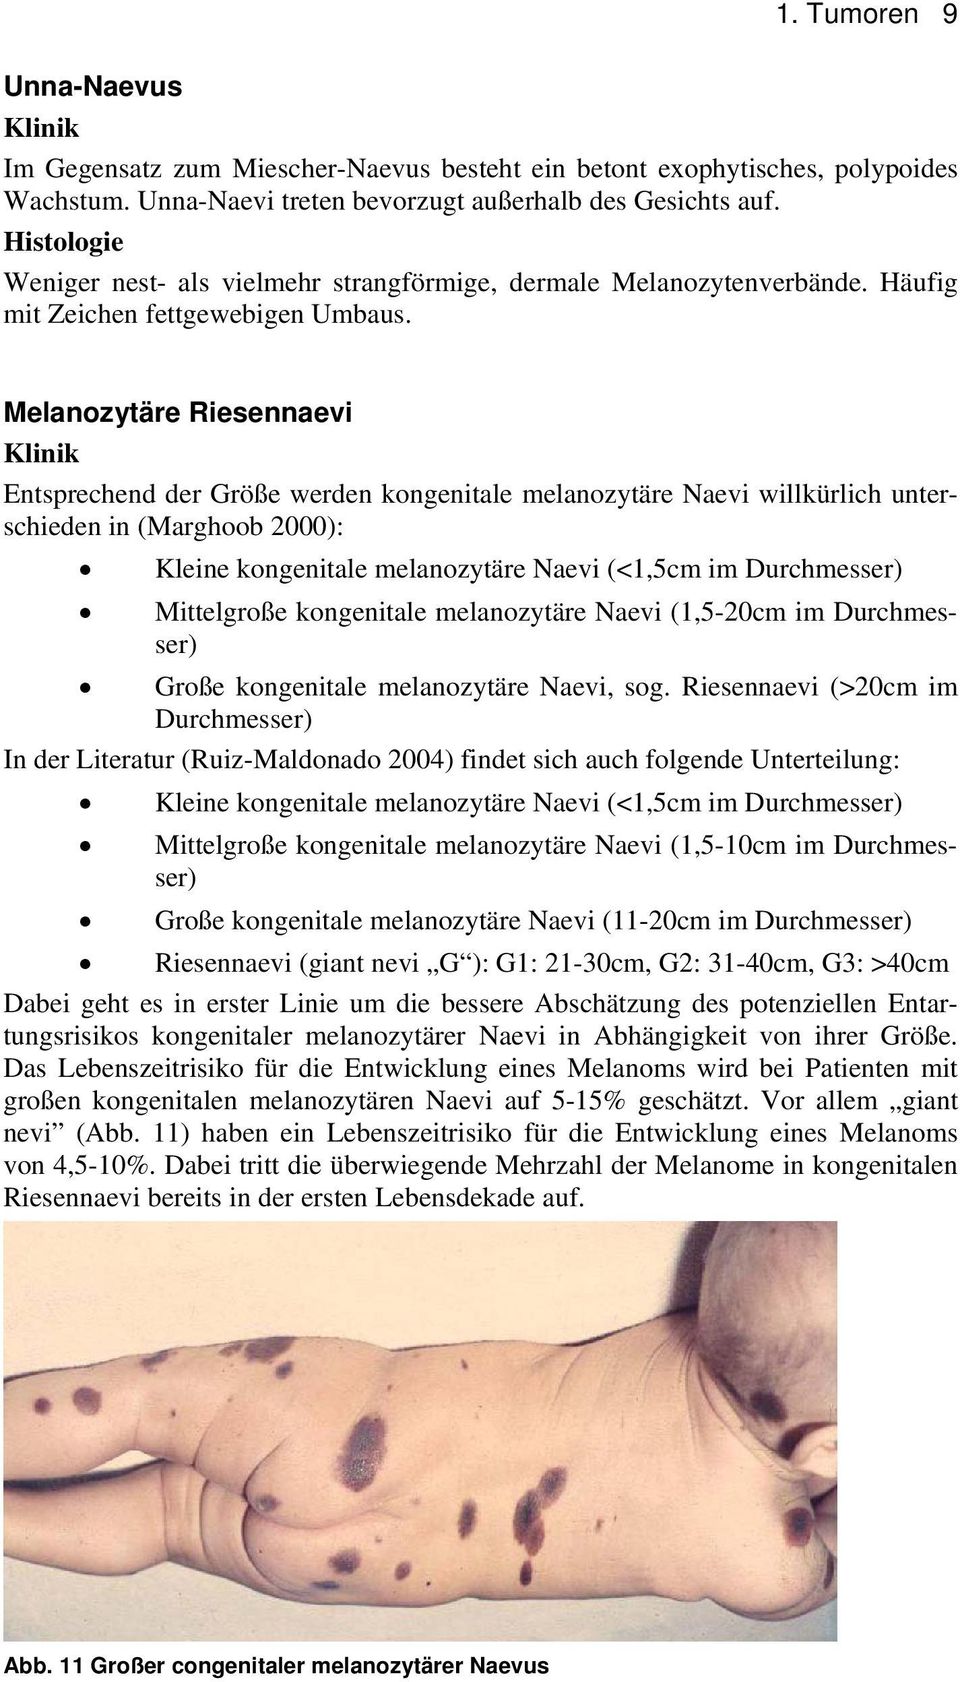 Melanozytäre Riesennaevi Entsprechend der Größe werden kongenitale melanozytäre Naevi willkürlich unterschieden in (Marghoob 2000): Kleine kongenitale melanozytäre Naevi (<1,5cm im Durchmesser)